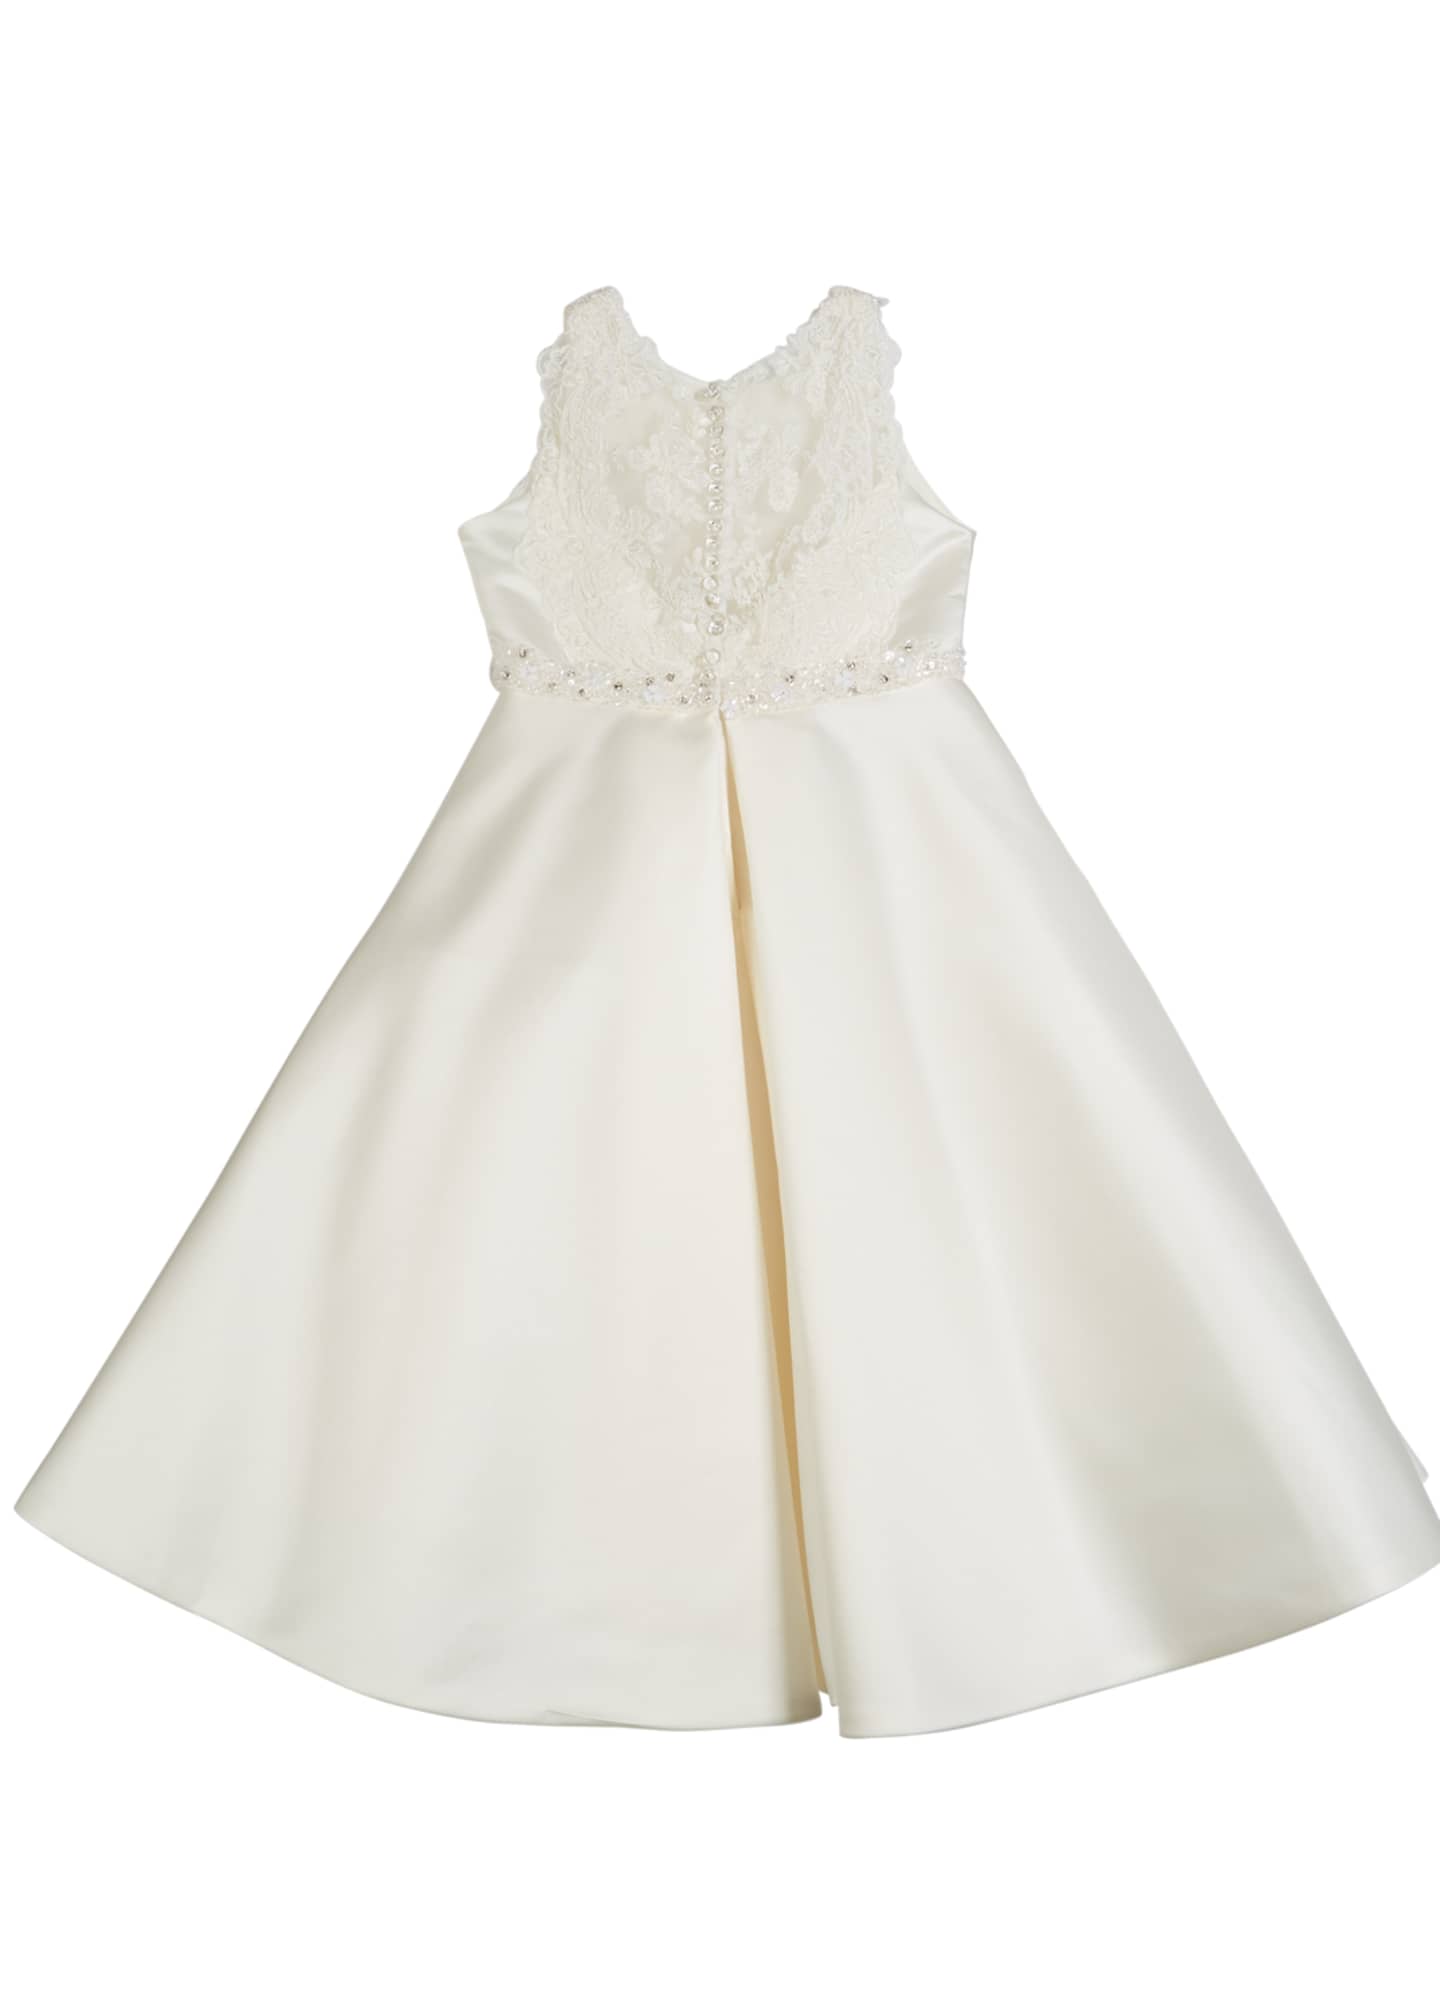 Joan Calabrese Lace-Trim Satin Dress, Size 4-14 - Bergdorf Goodman